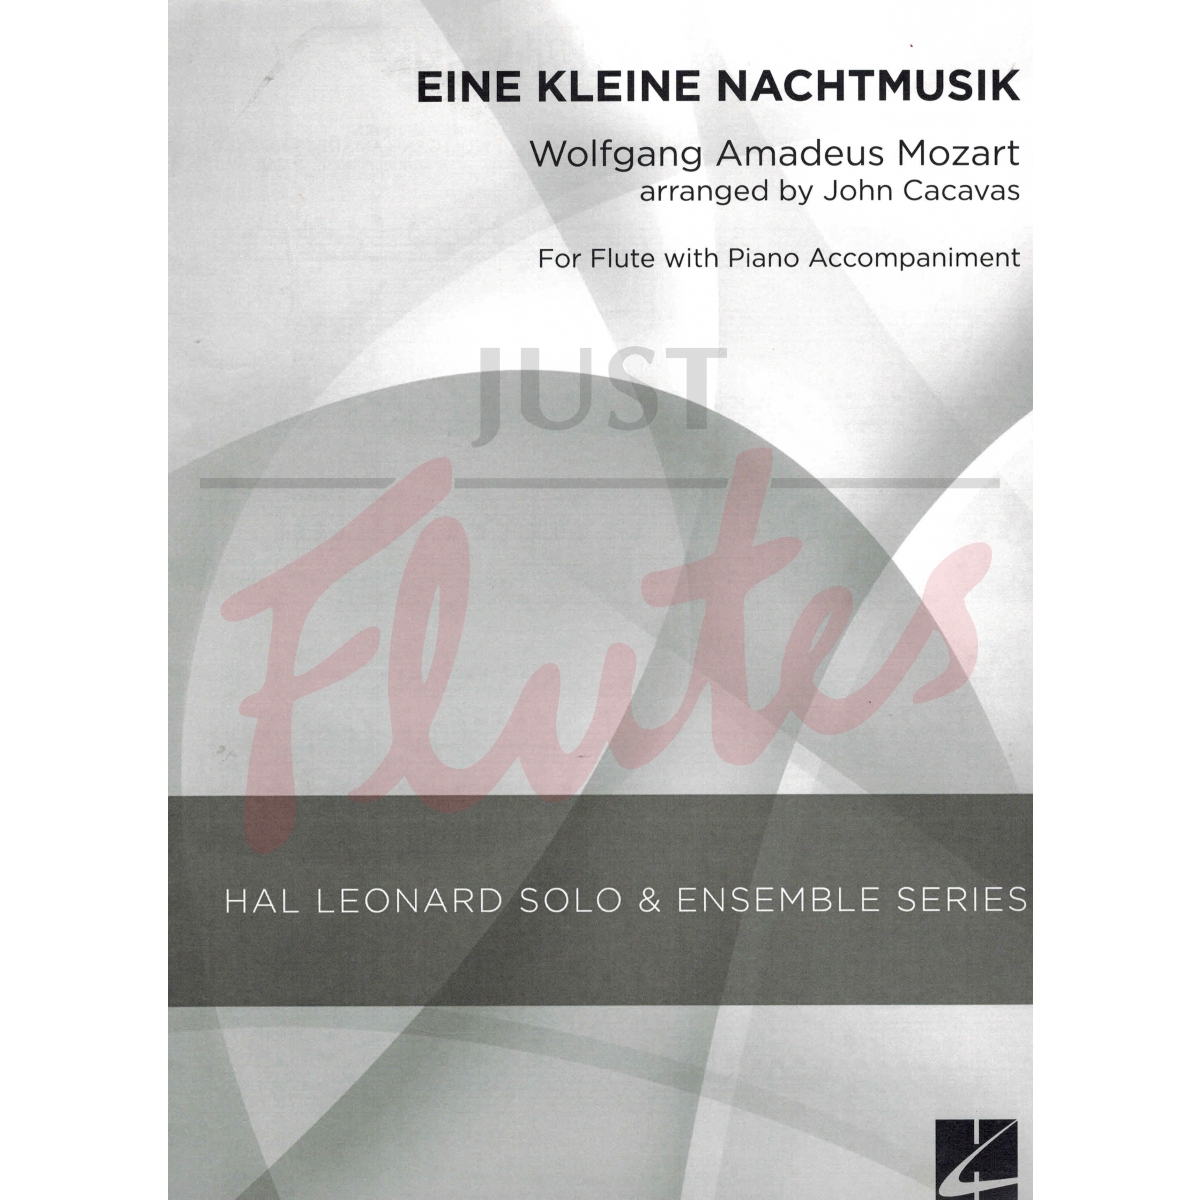 Eine Kleine Nachtmusik Allegro arranged for flute and piano